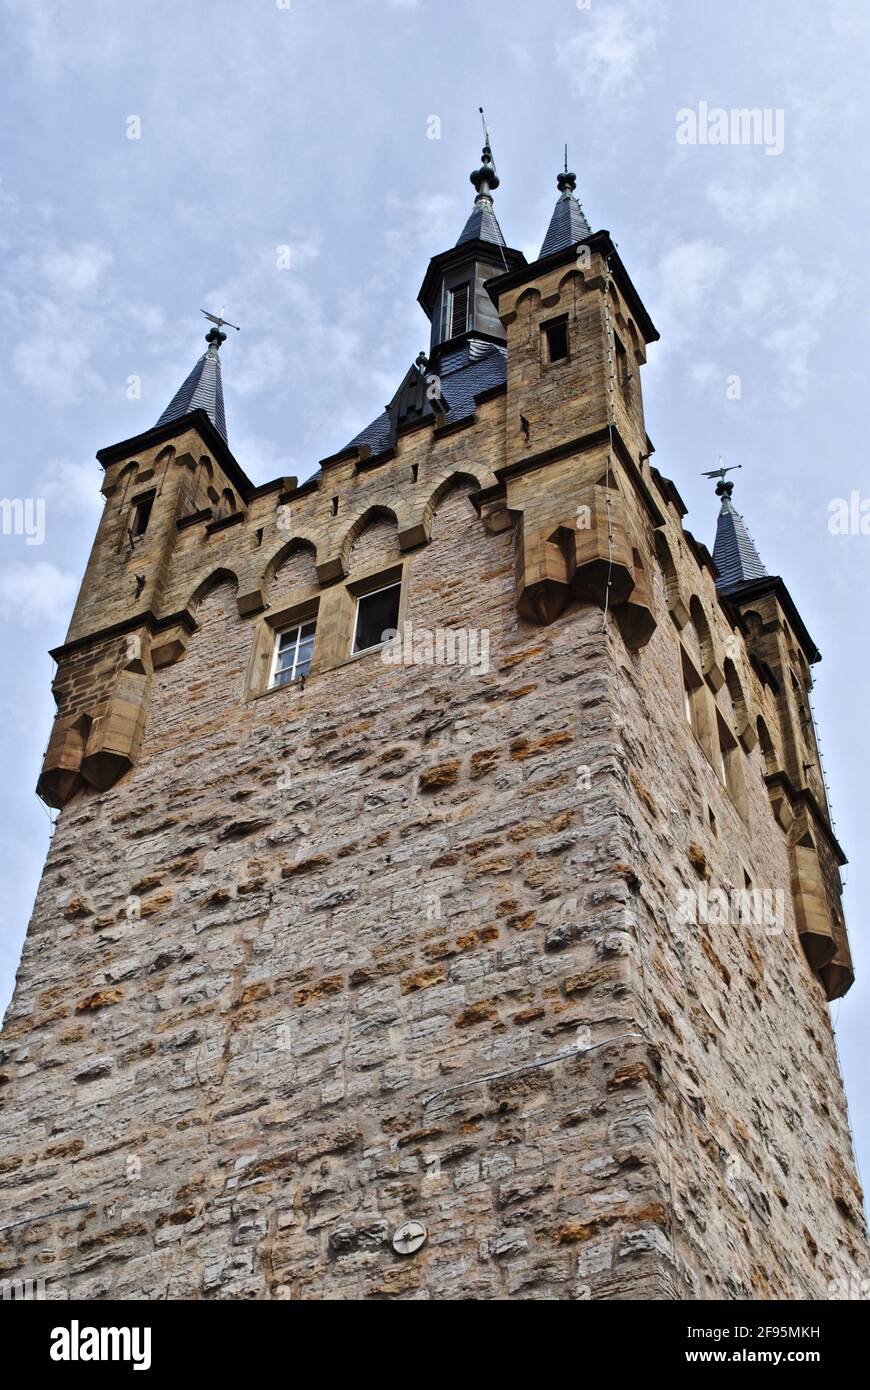 La Torre Azul (Blauer Turm) en Bad Wimpfen, Alemania en el distrito de Heilbronn en Baden-Württemberg. El principal monumento visual de la ciudad. Foto de stock